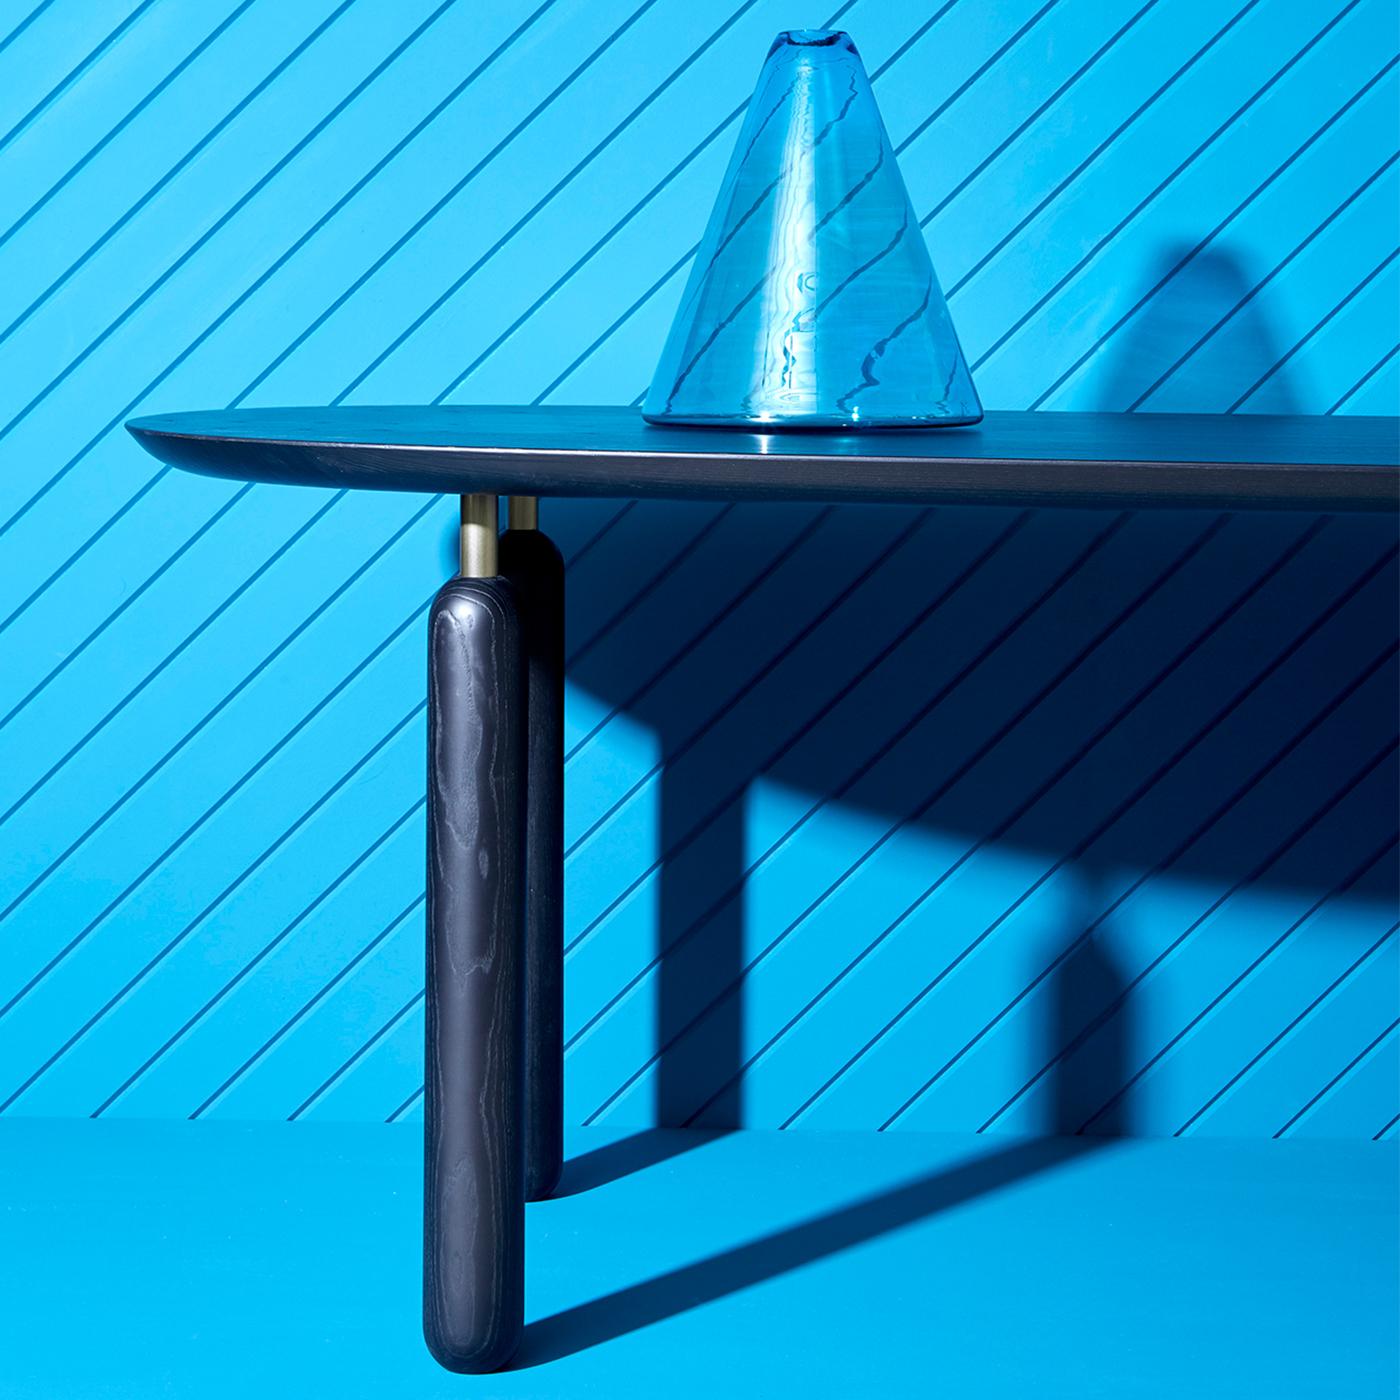 Der Ellipse Tisch ist eine faszinierende Ergänzung für ein modernes Esszimmer. Mit seinem stromlinienförmigen Design und seinen weichen Linien bietet er mühelose Eleganz und außergewöhnliche Funktionalität. Die große ovale Platte ist aus MDF mit